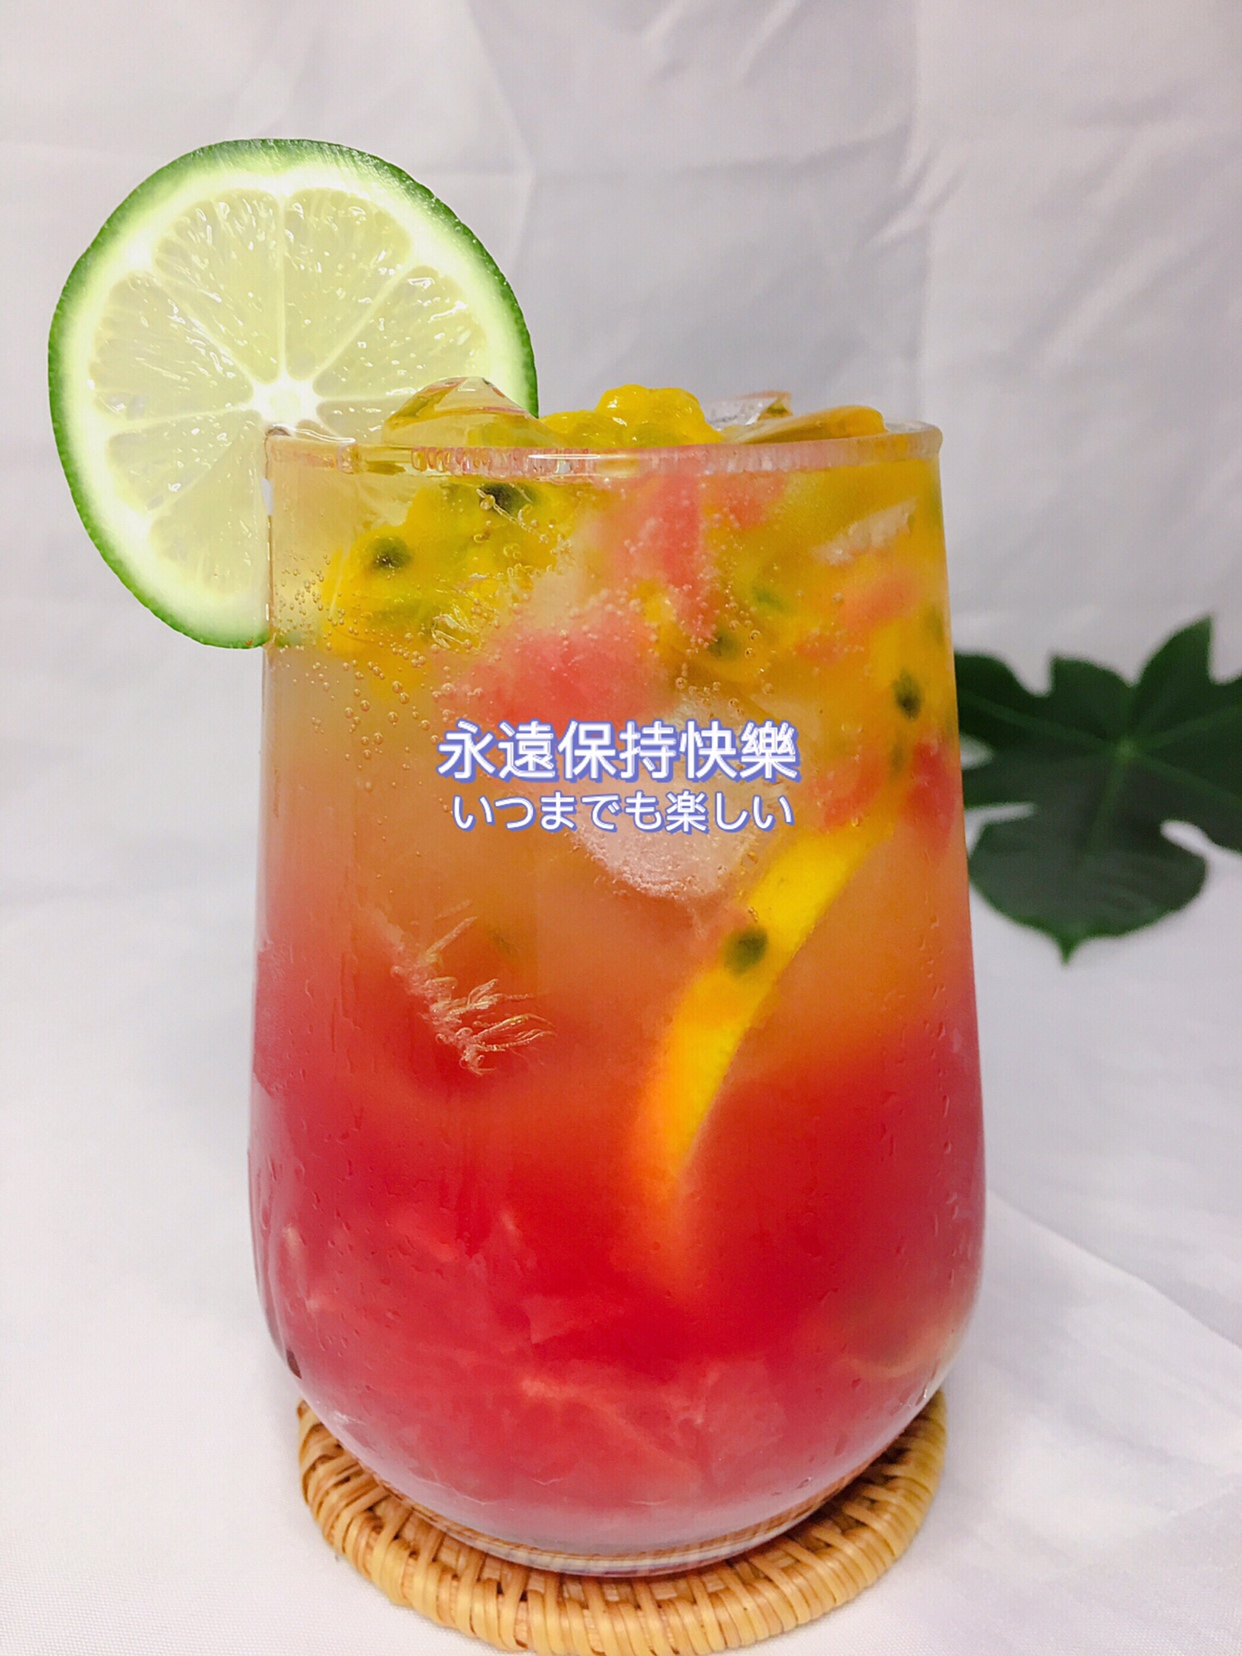 夏日西柚西瓜饮品‼️热情似火的颜色爱死了的做法